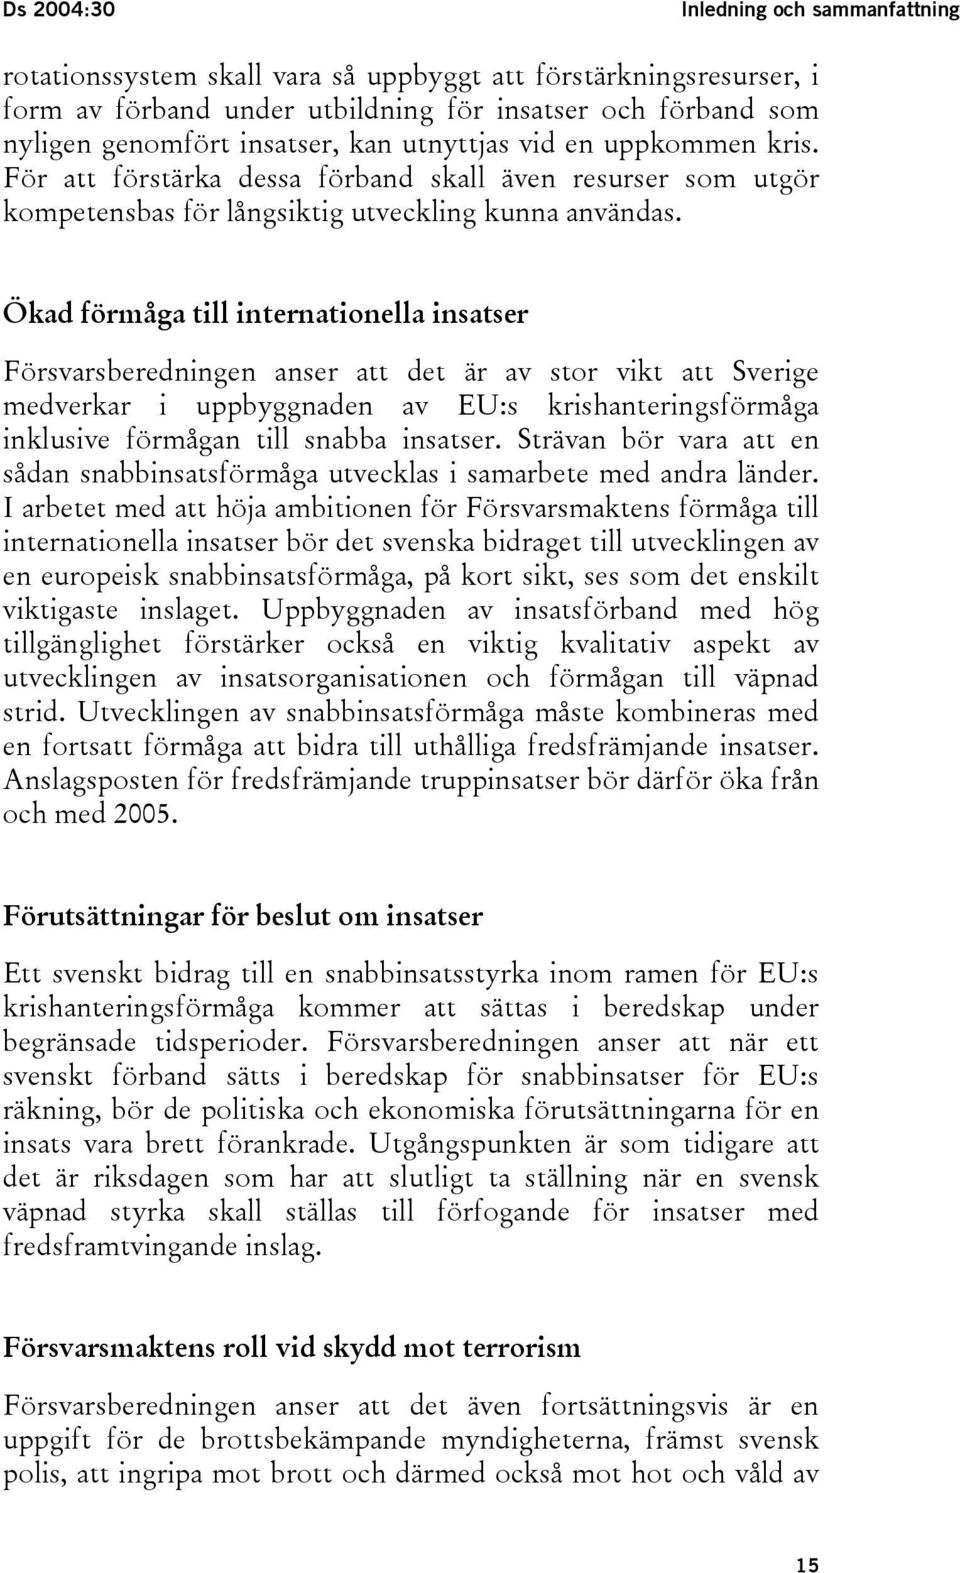 Ökad förmåga till internationella insatser Försvarsberedningen anser att det är av stor vikt att Sverige medverkar i uppbyggnaden av EU:s krishanteringsförmåga inklusive förmågan till snabba insatser.